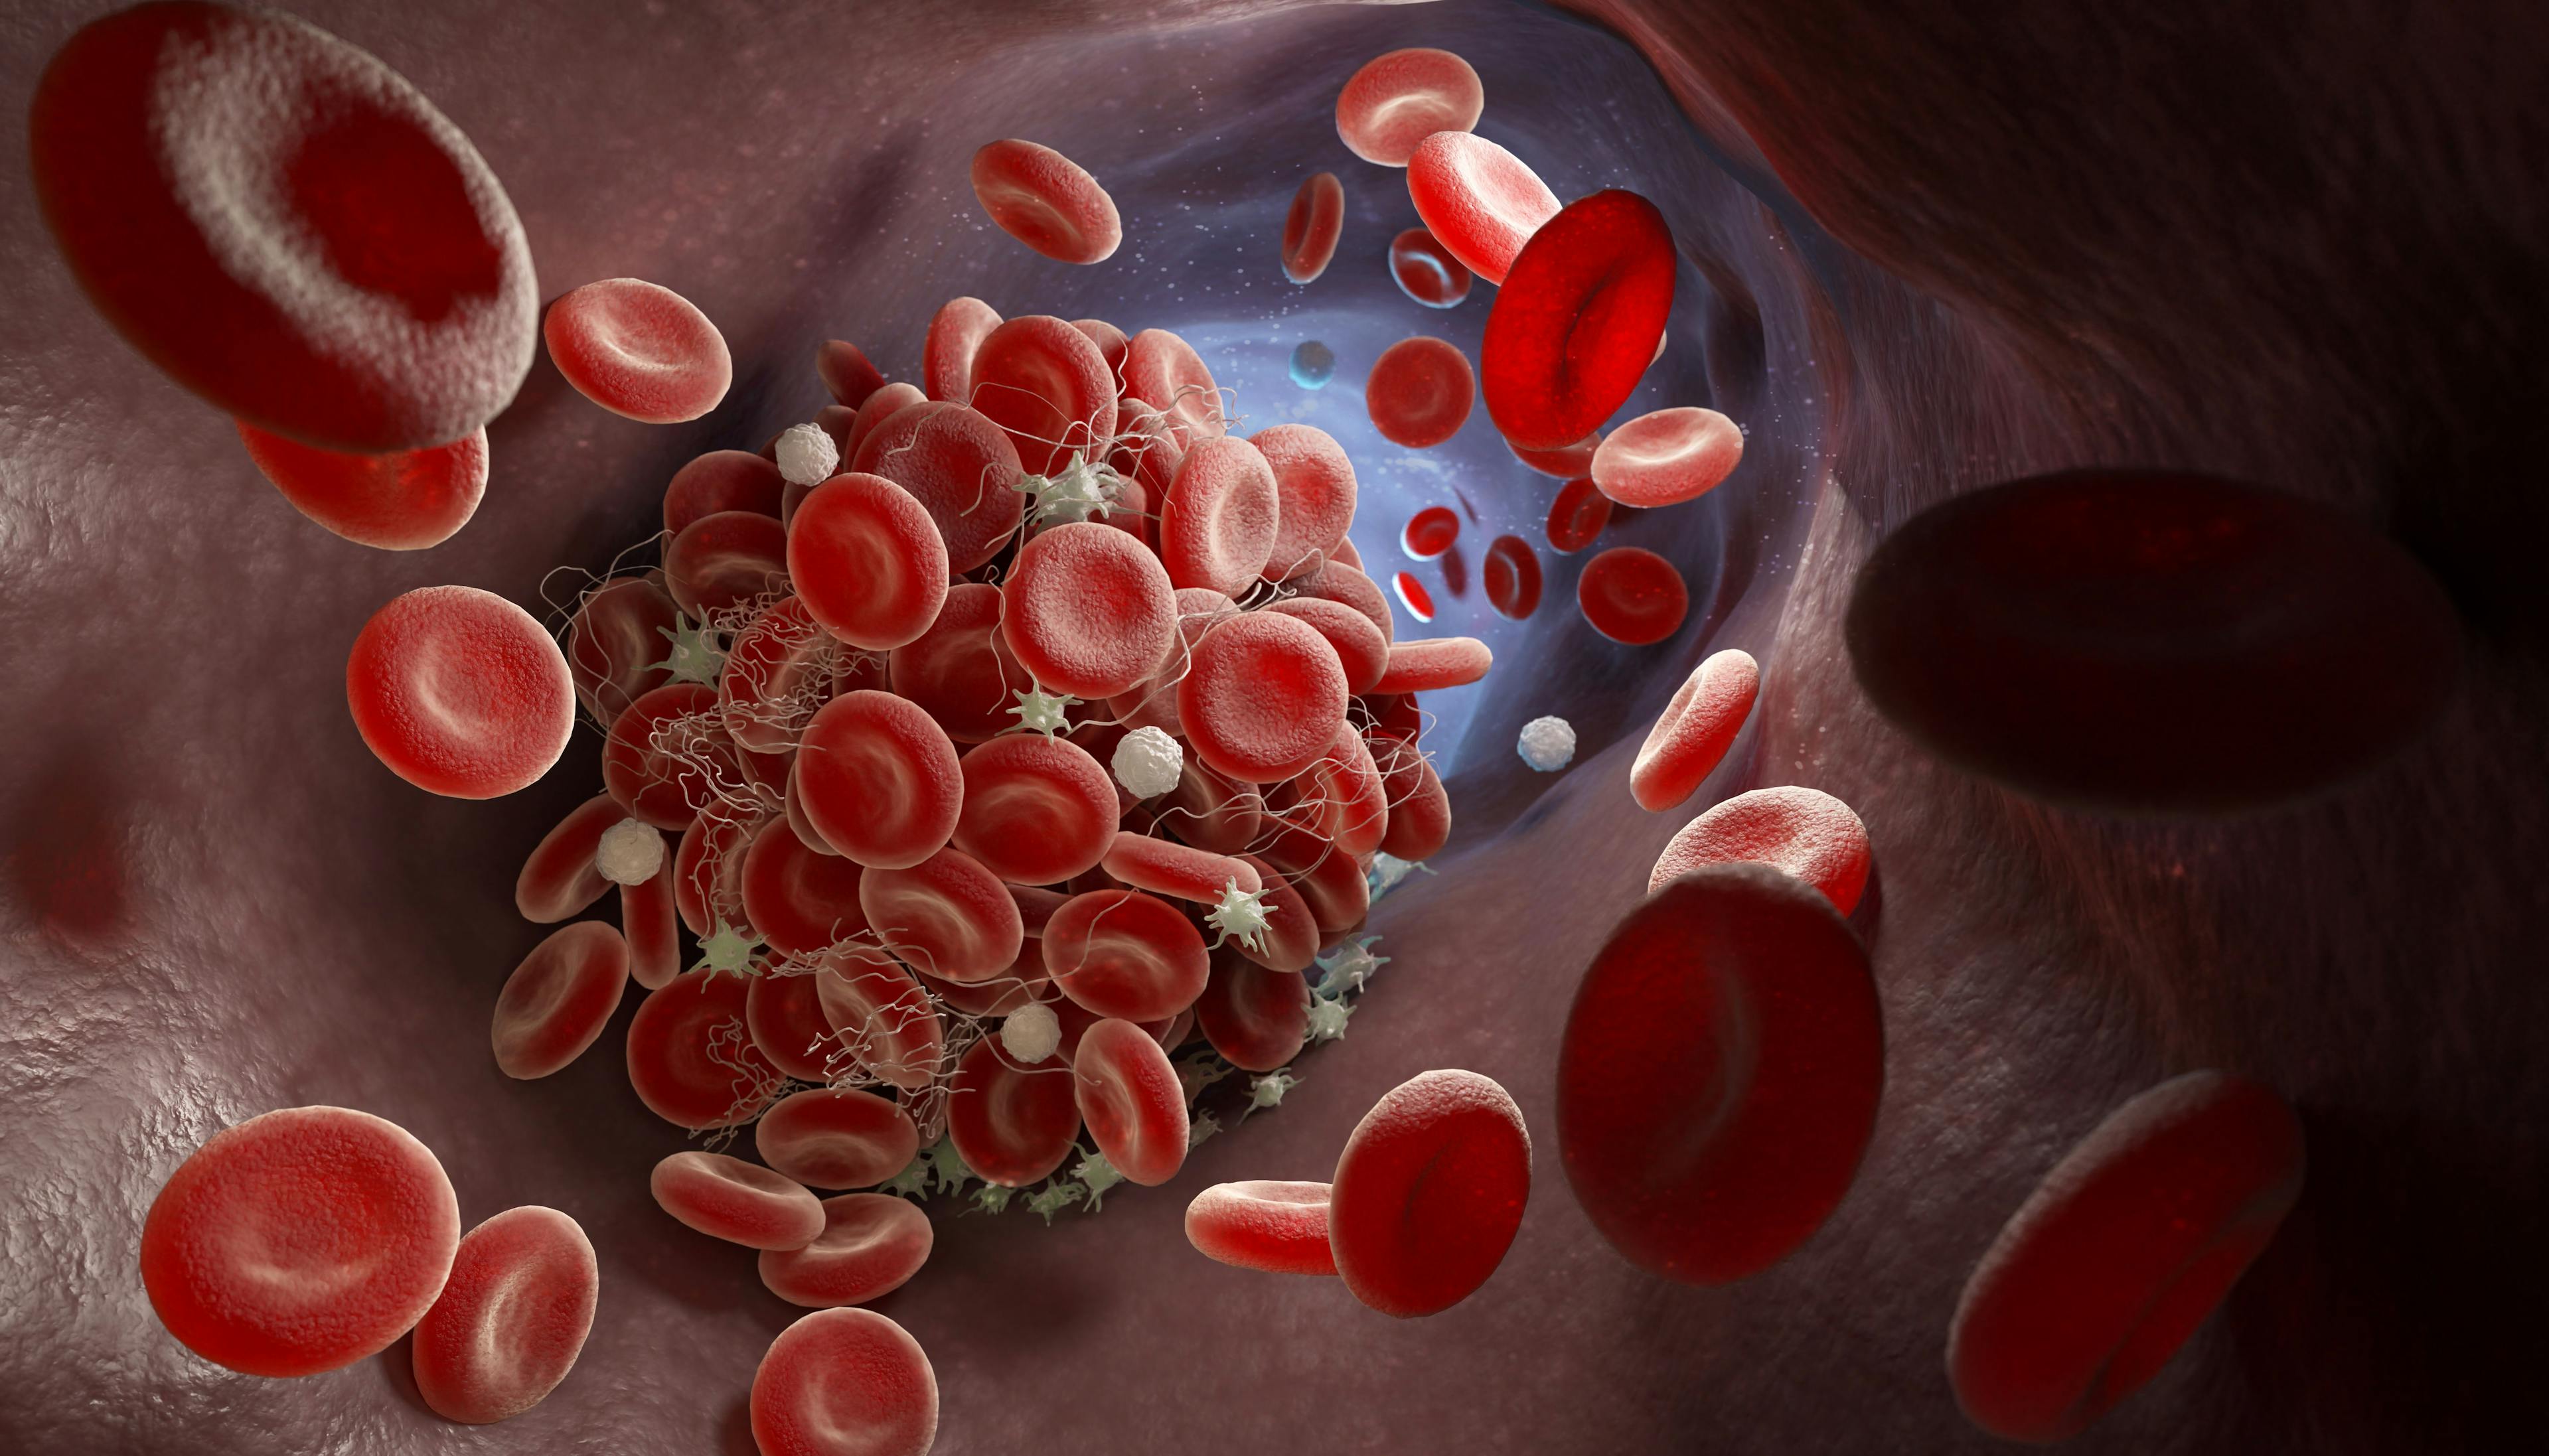 Formation of a blood clot | Image credit: © Tatiana Shepeleva - Tatiana Shepeleva stock.adobe.com